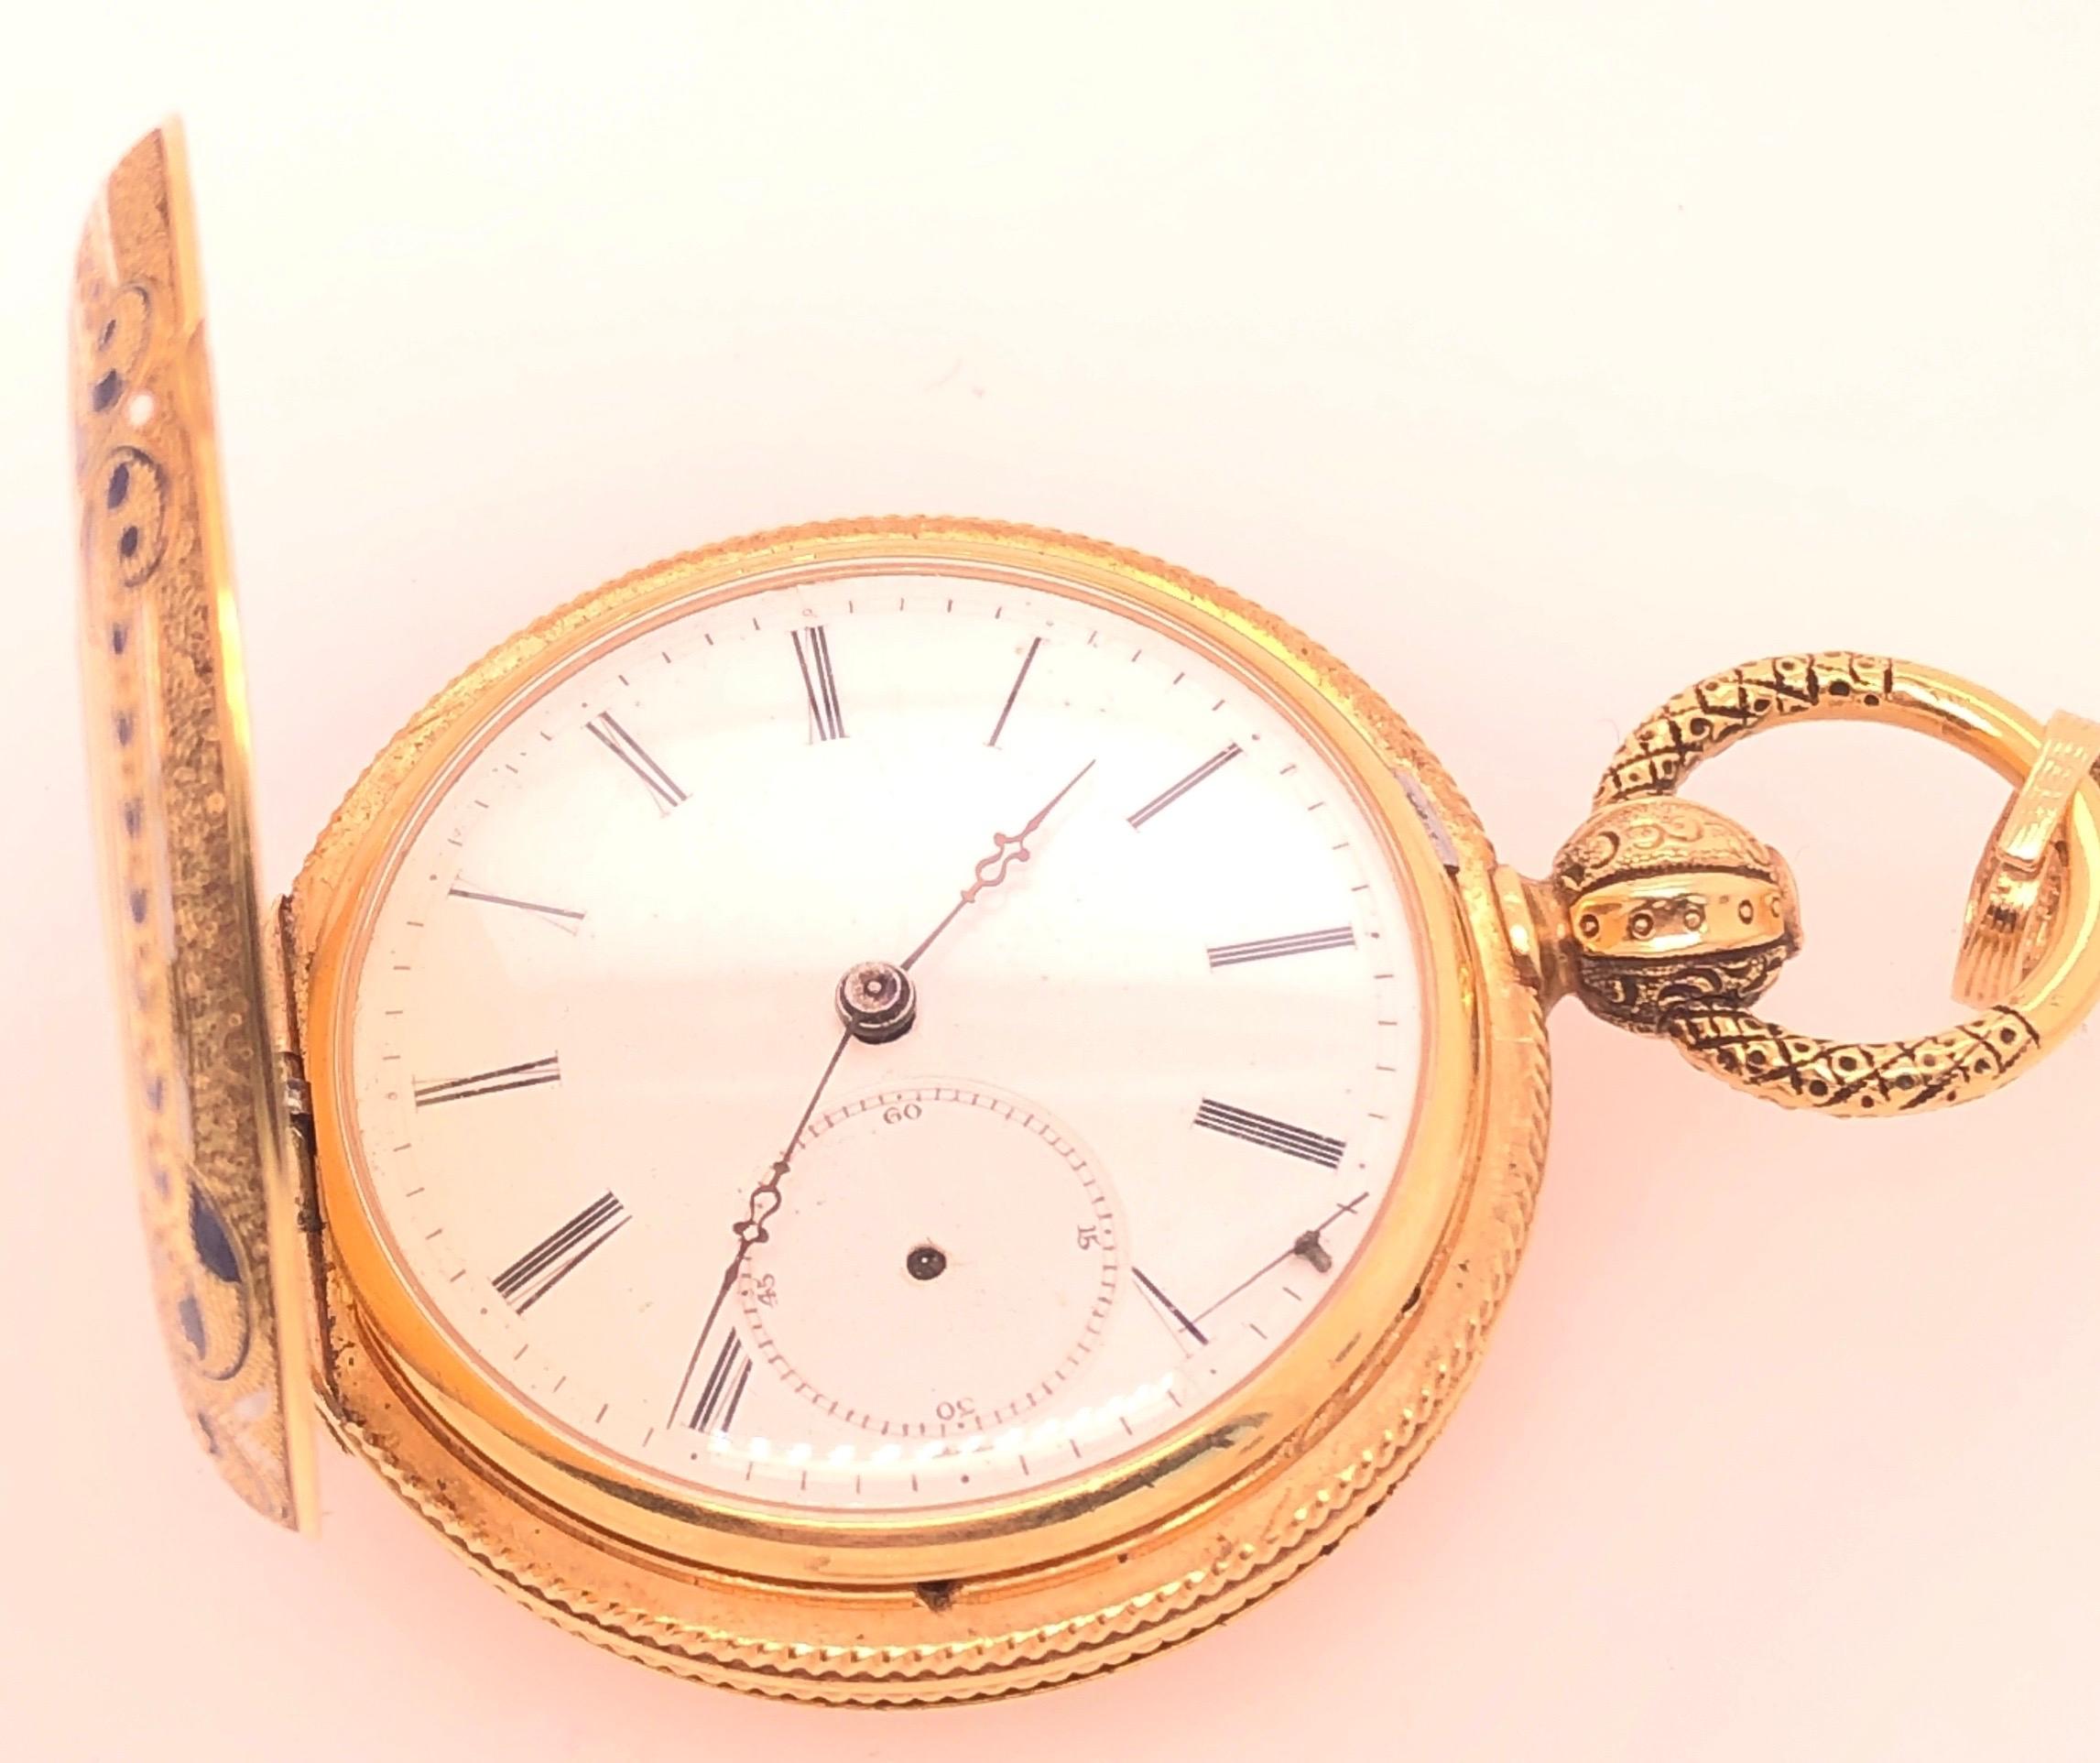 montre de poche ancienne Breguet Paris en or jaune 18 carats avec cadran en porcelaine.
Seconde aiguille manquante Cette montre ne fonctionne pas. 